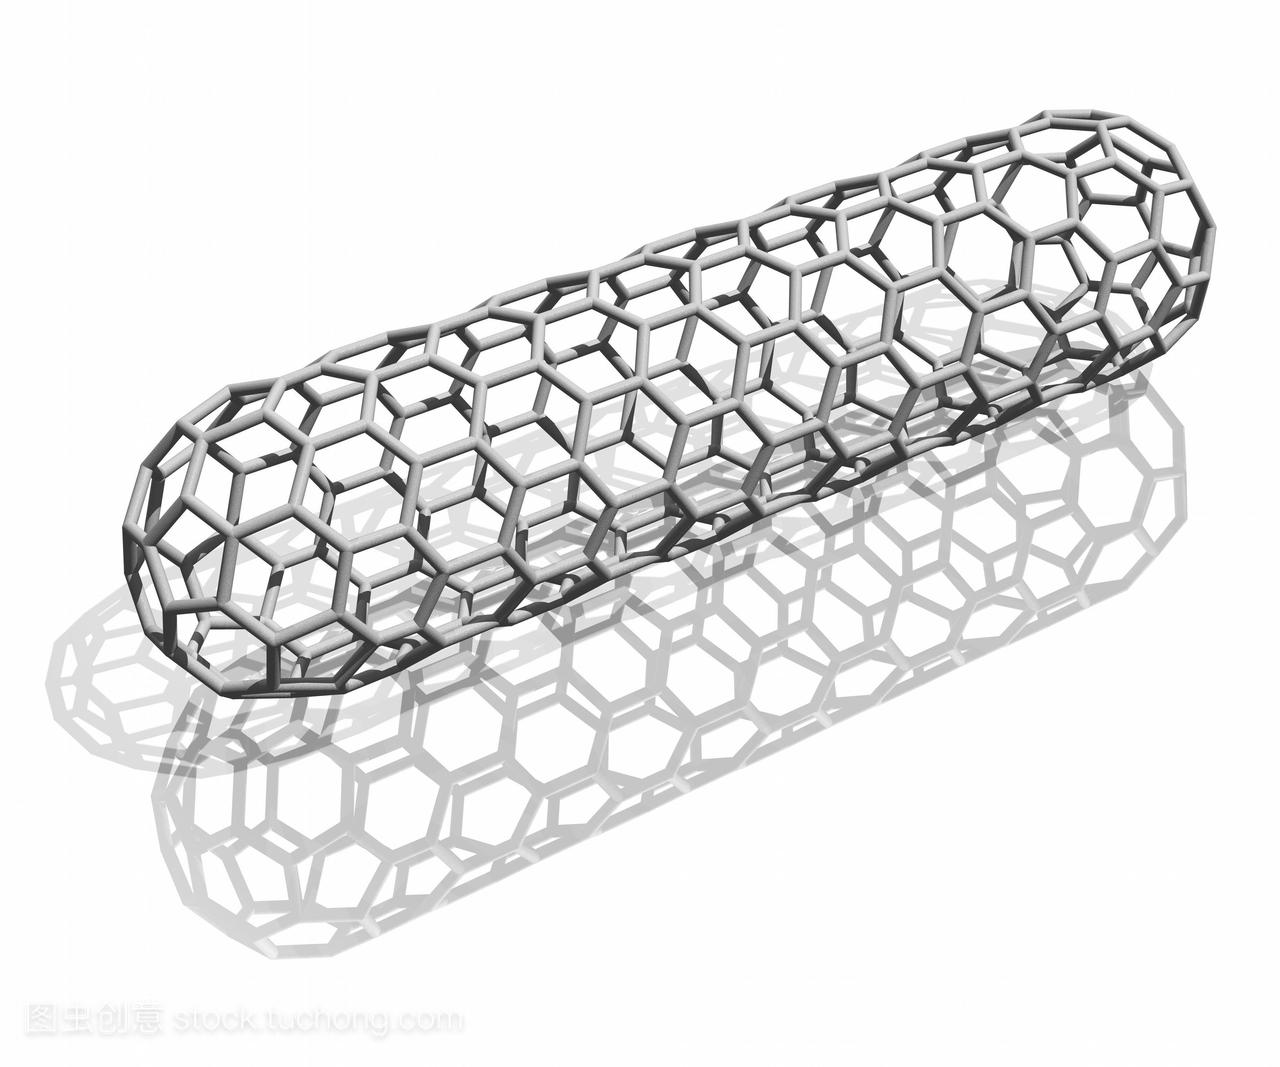 纳米管。电脑绘图的碳纳米管。它被称为限制因